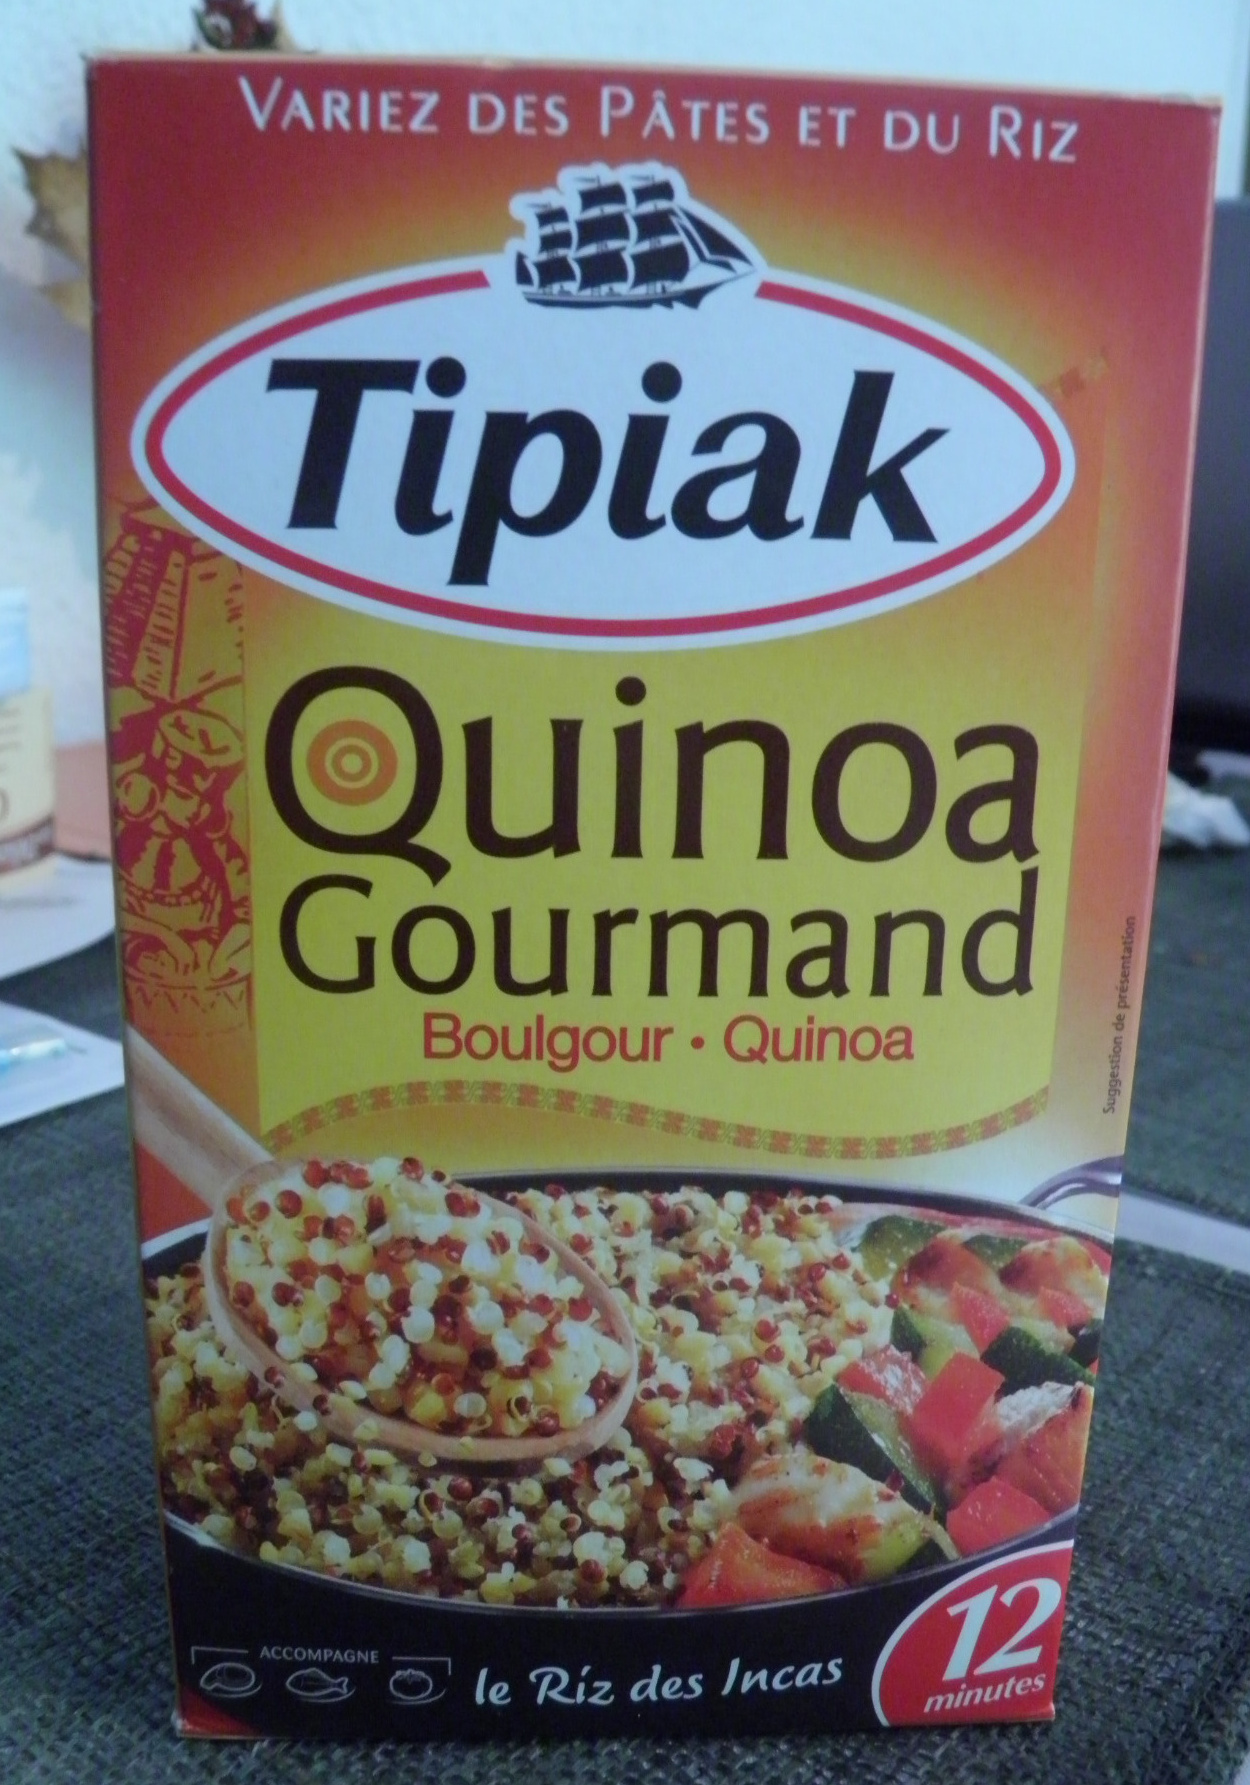 Quinoa gourmand Boulgour Quinoa Tipiak - Product - fr